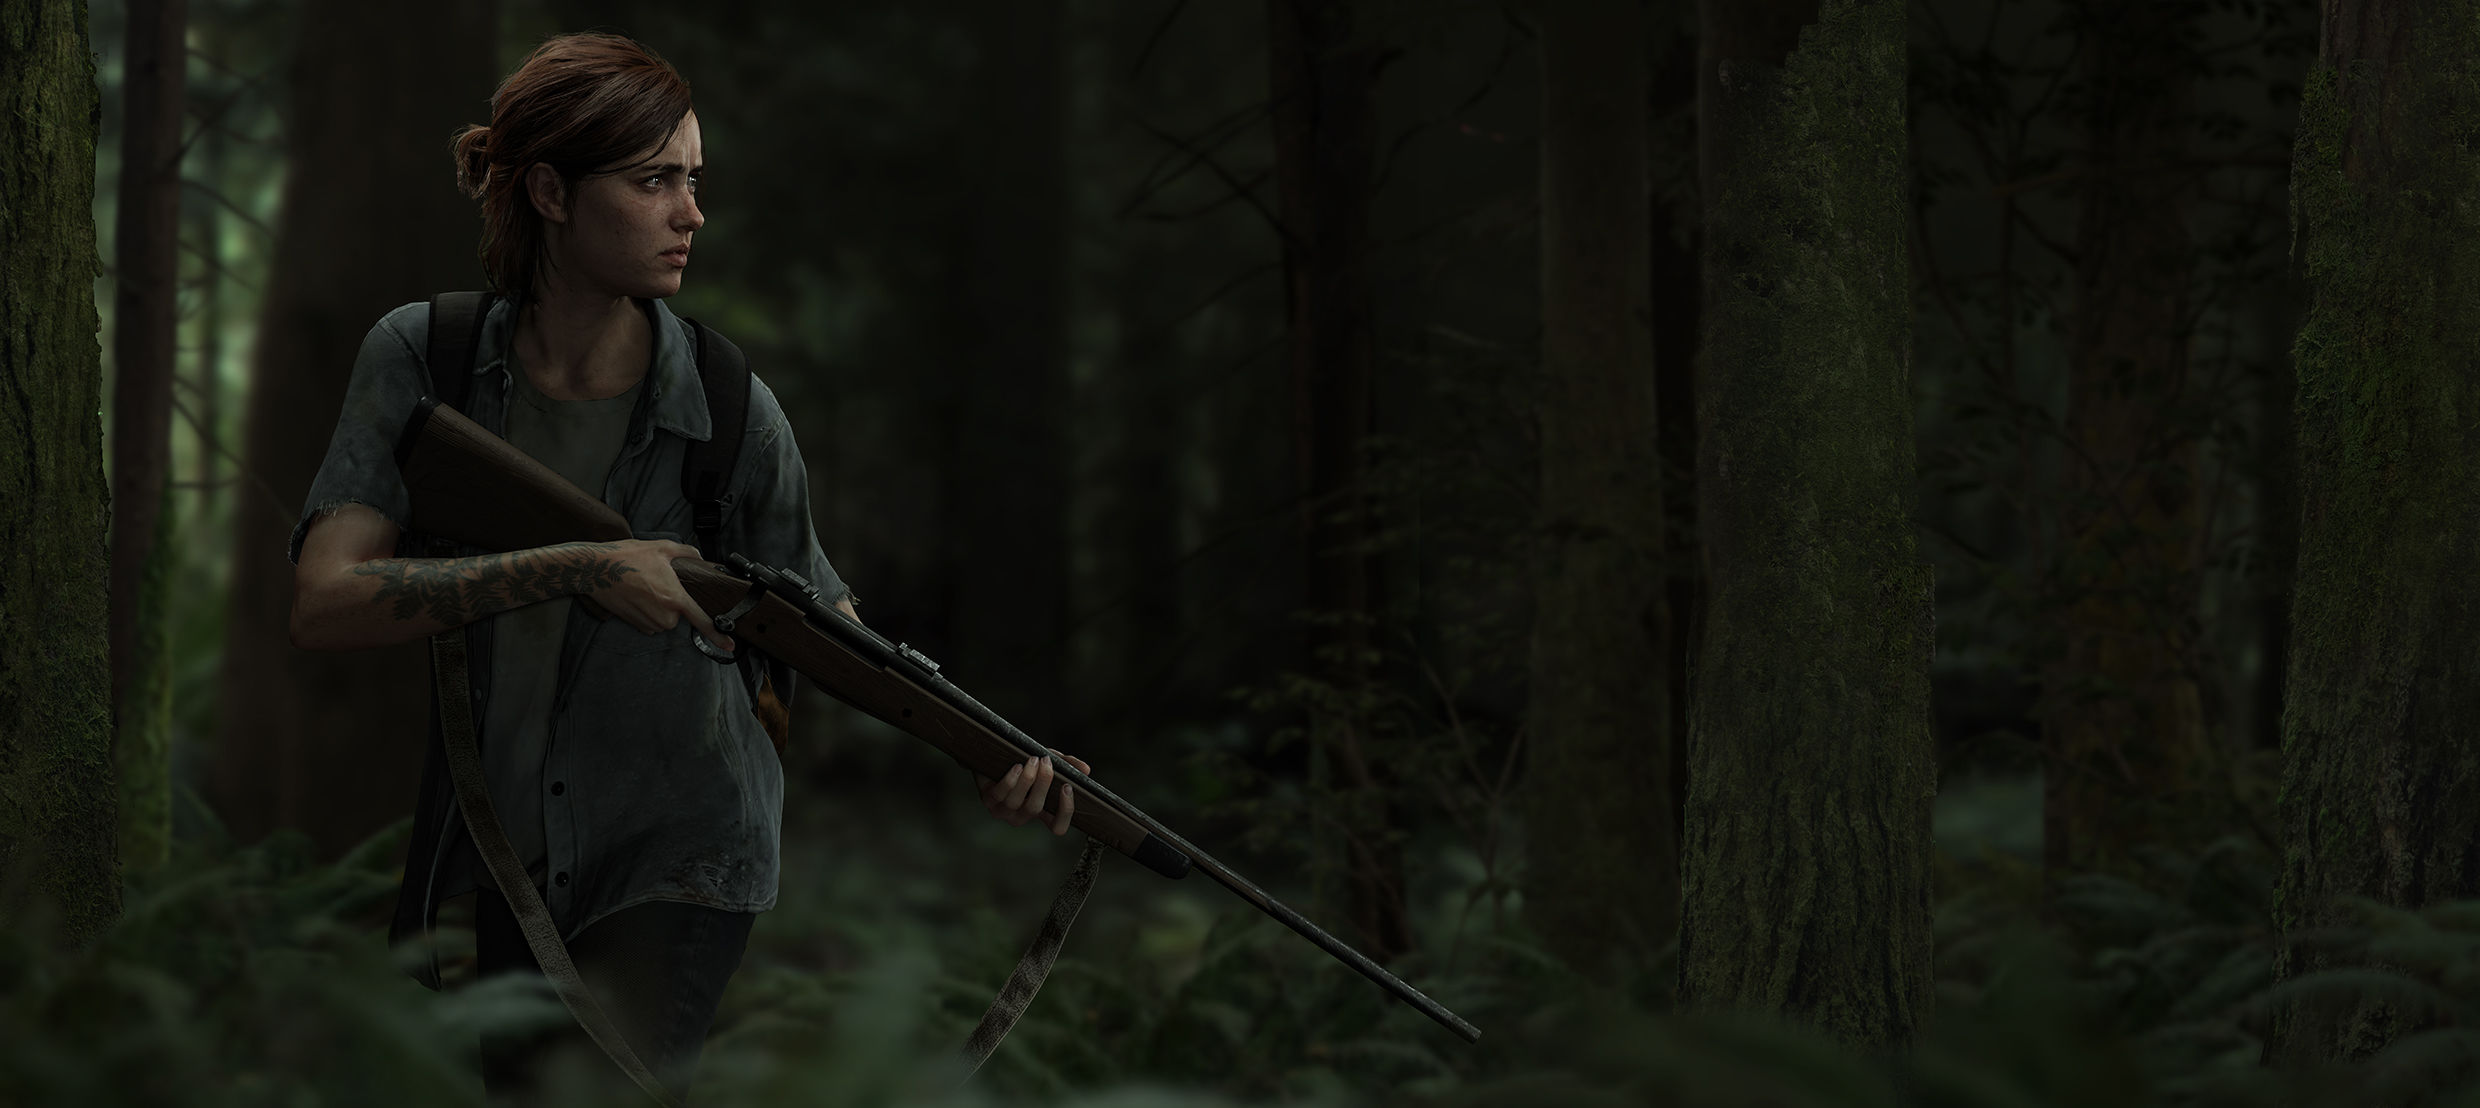 Слух: утечка из The Last of Us Part 2 предполагает выпуск в октябре 2019 года